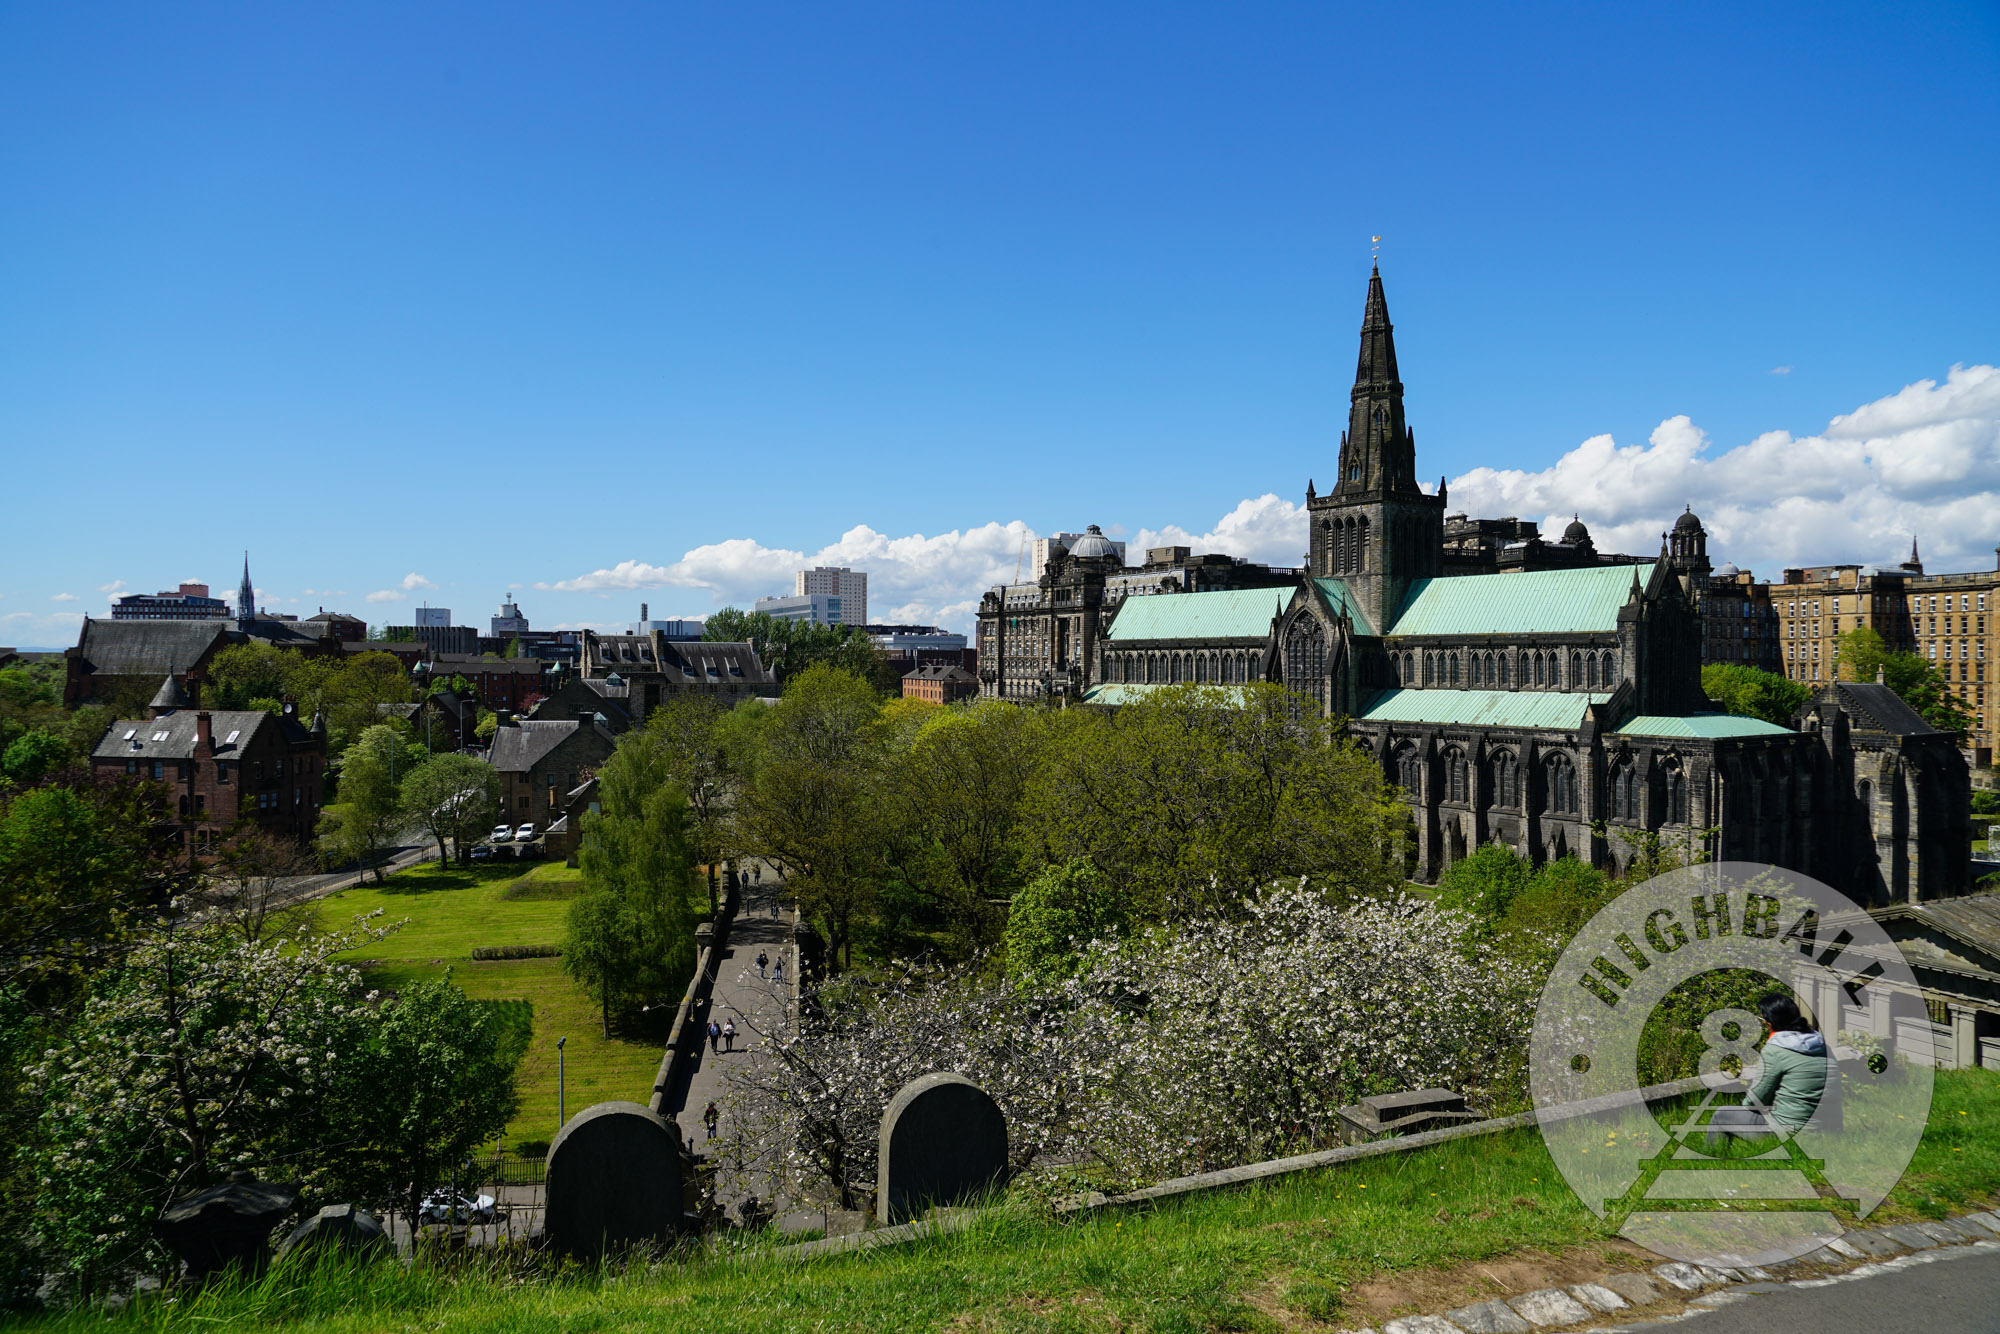 Glasgow Cathedral as seen from the Glasgow Necropolis, Glasgow, Scotland, UK, 2018.